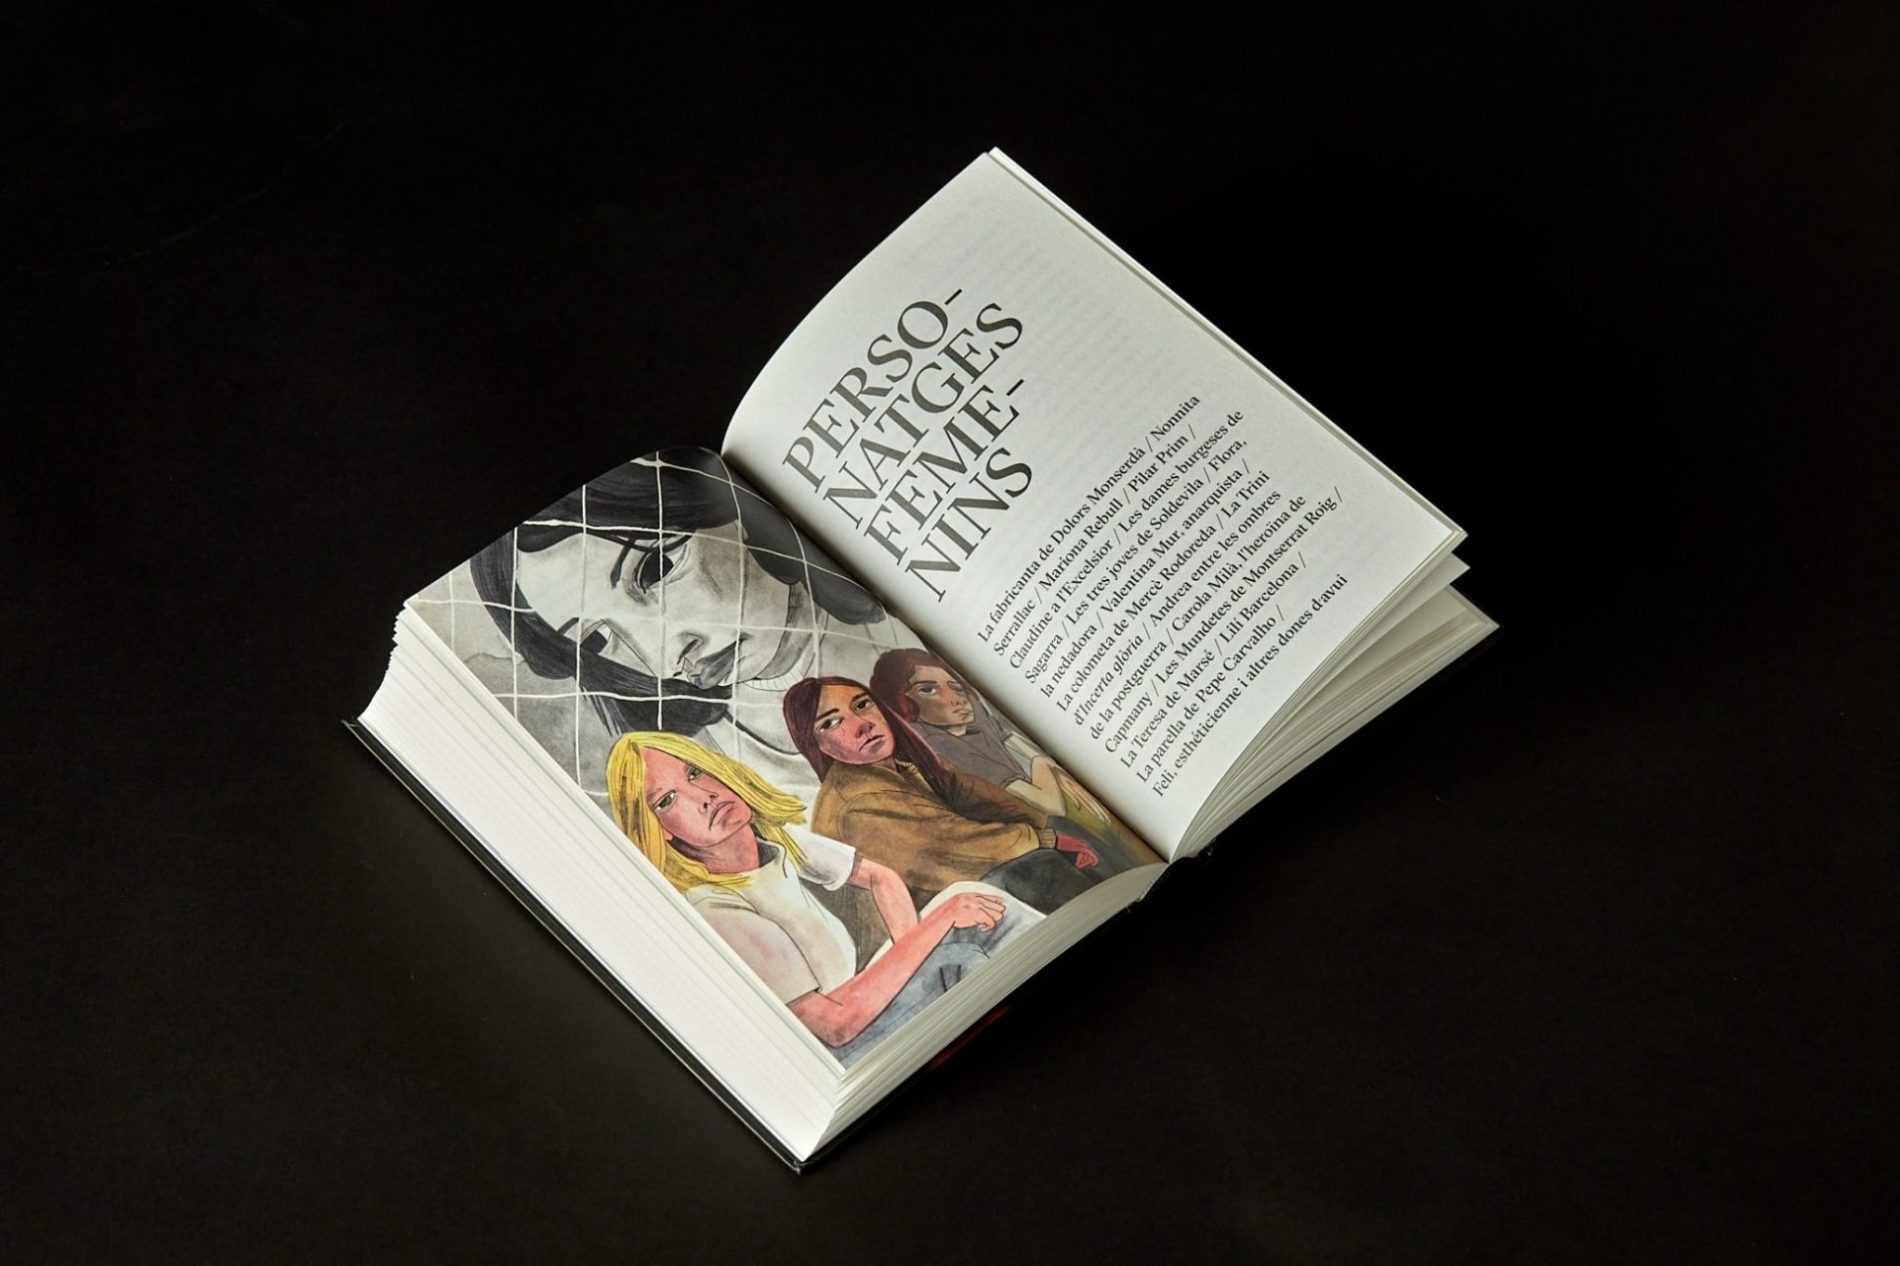 Diseño y dirección de arte del libro Flors i Violes, con ilustraciones de Laura Pérez, Eva Zurita, María Herreros y Helena Pérez.